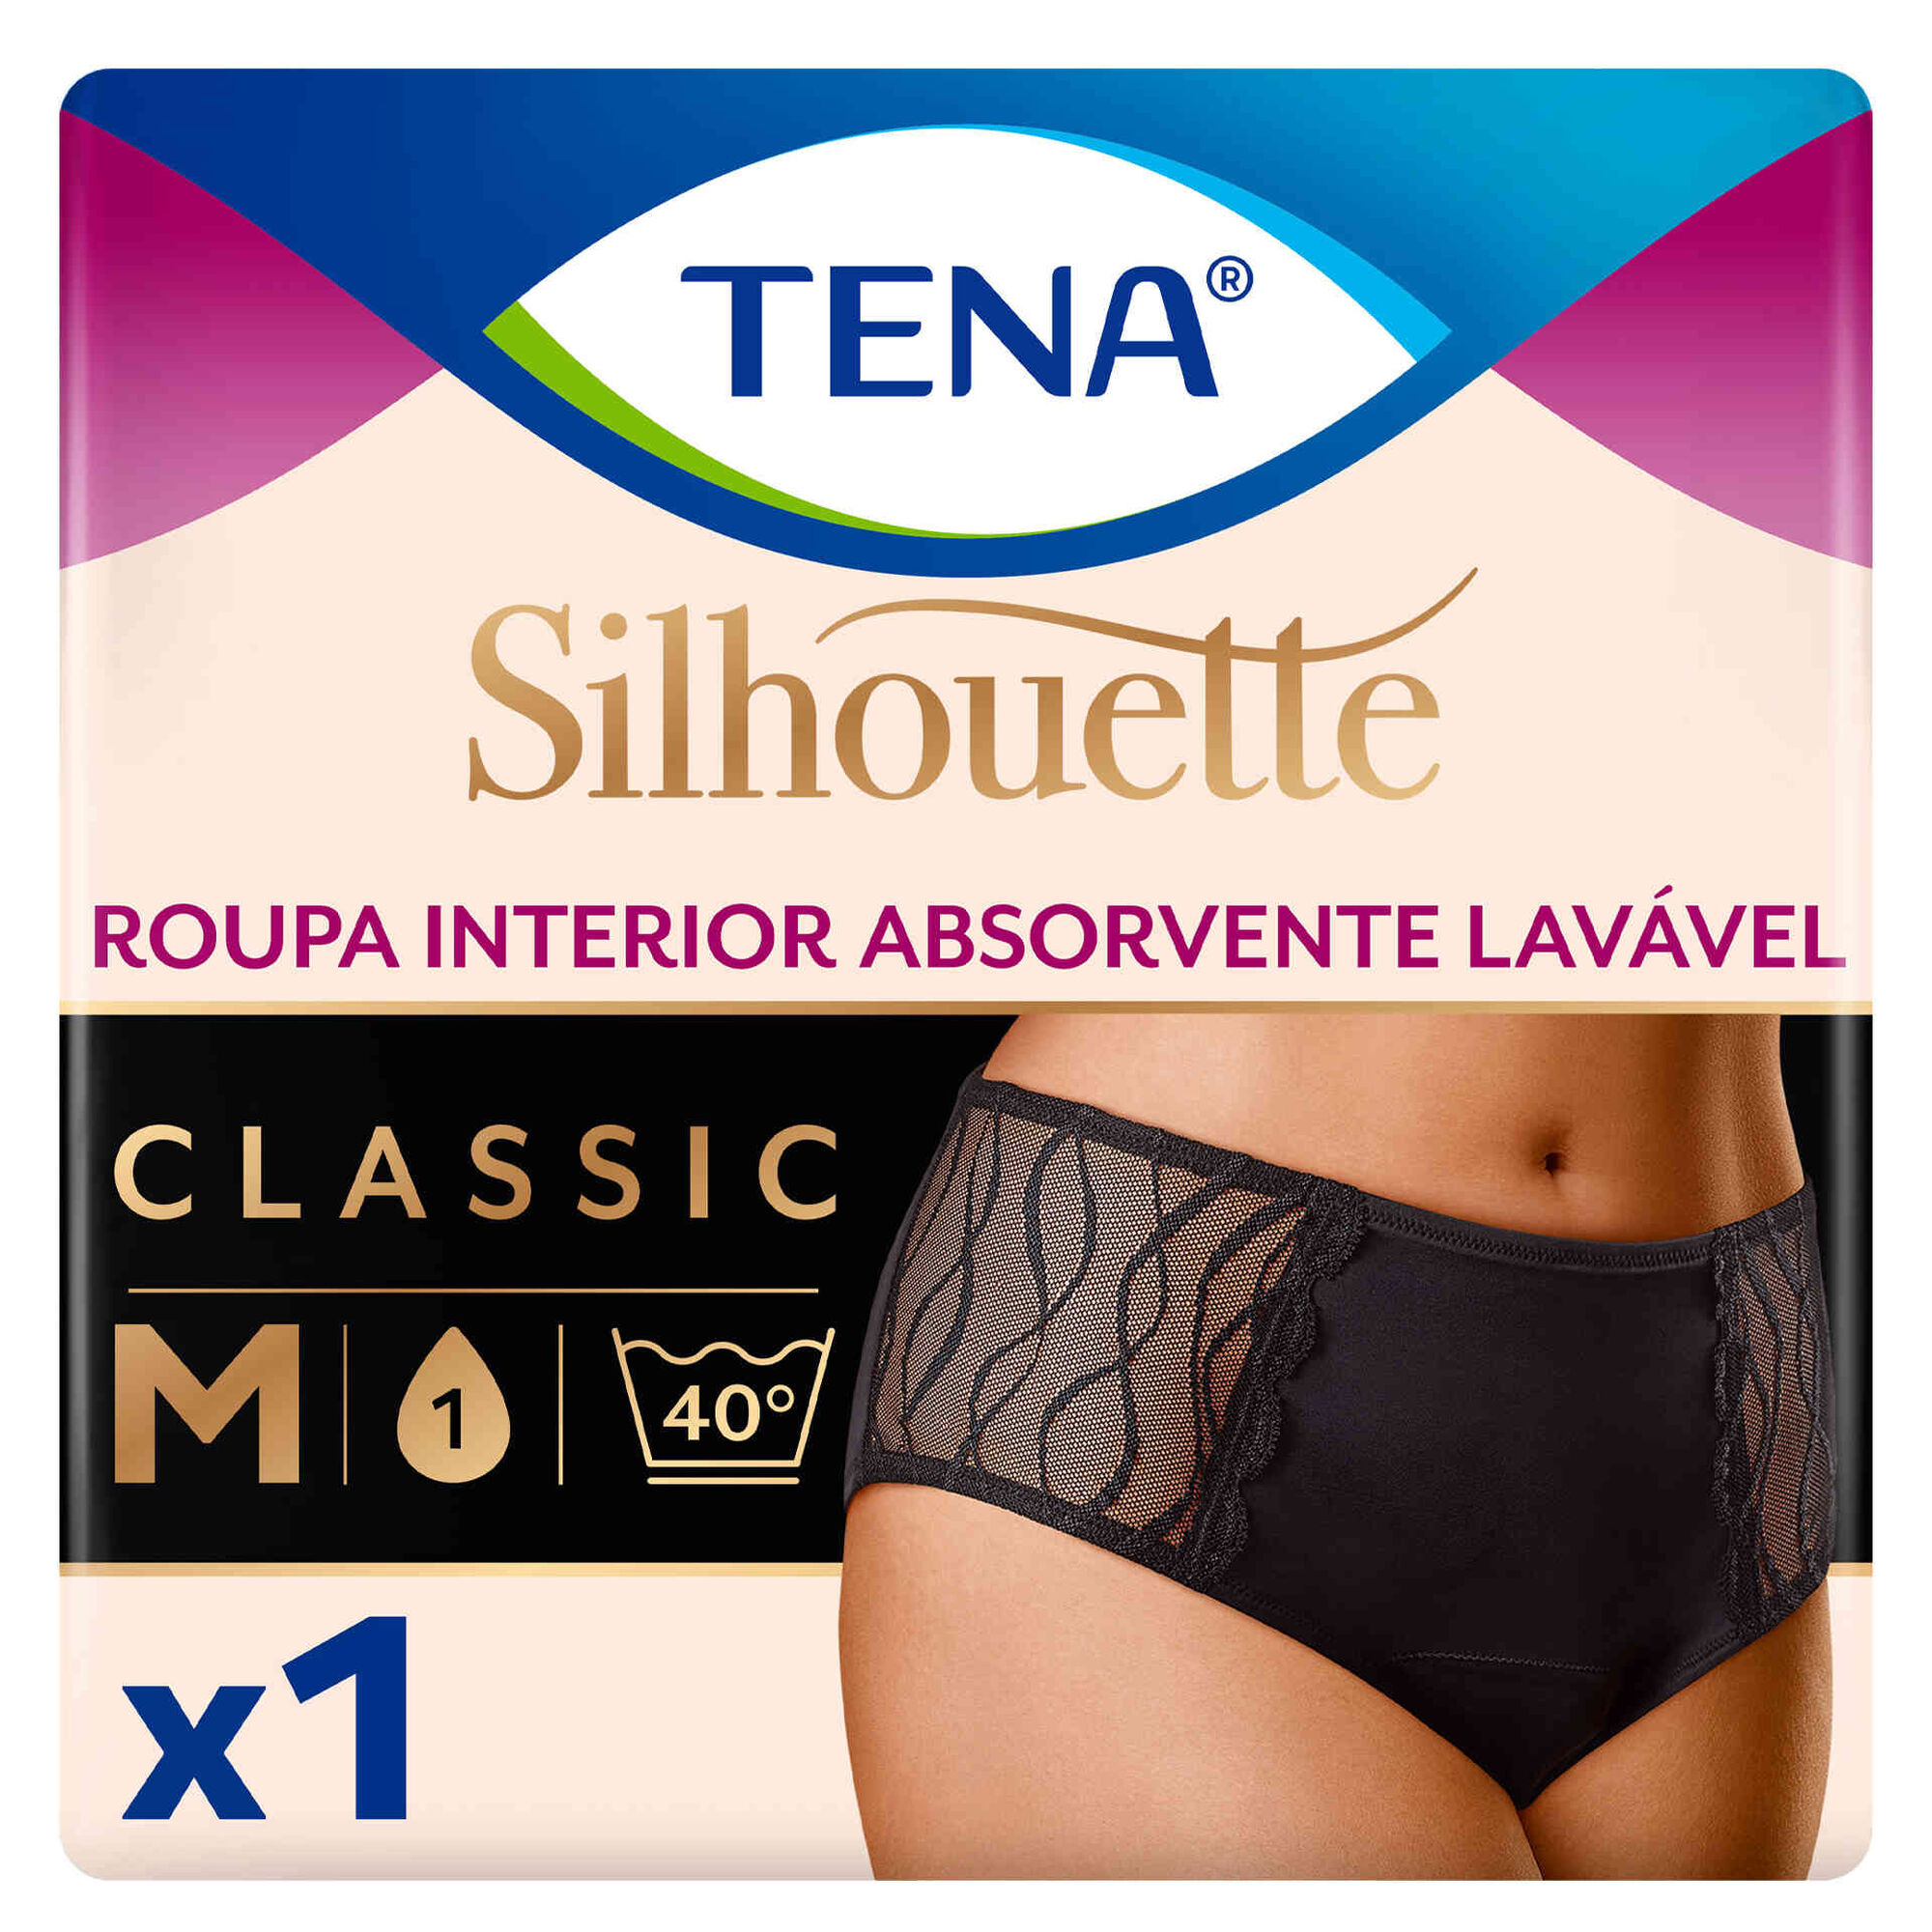 Tena Silhouette Washable Absorbent Underwear - Produto do Ano Portugal